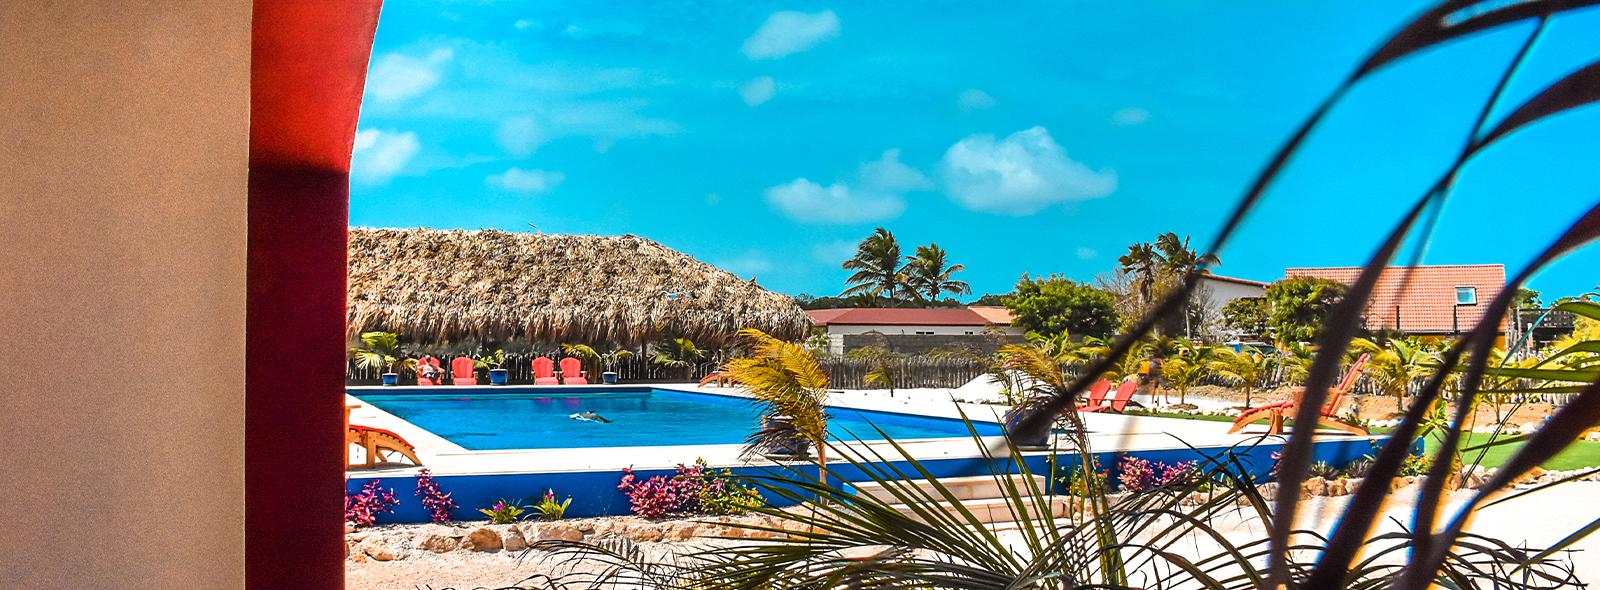 piscine exterieur de l'hotel sorobon à bonaire sur le spot de lac bay 